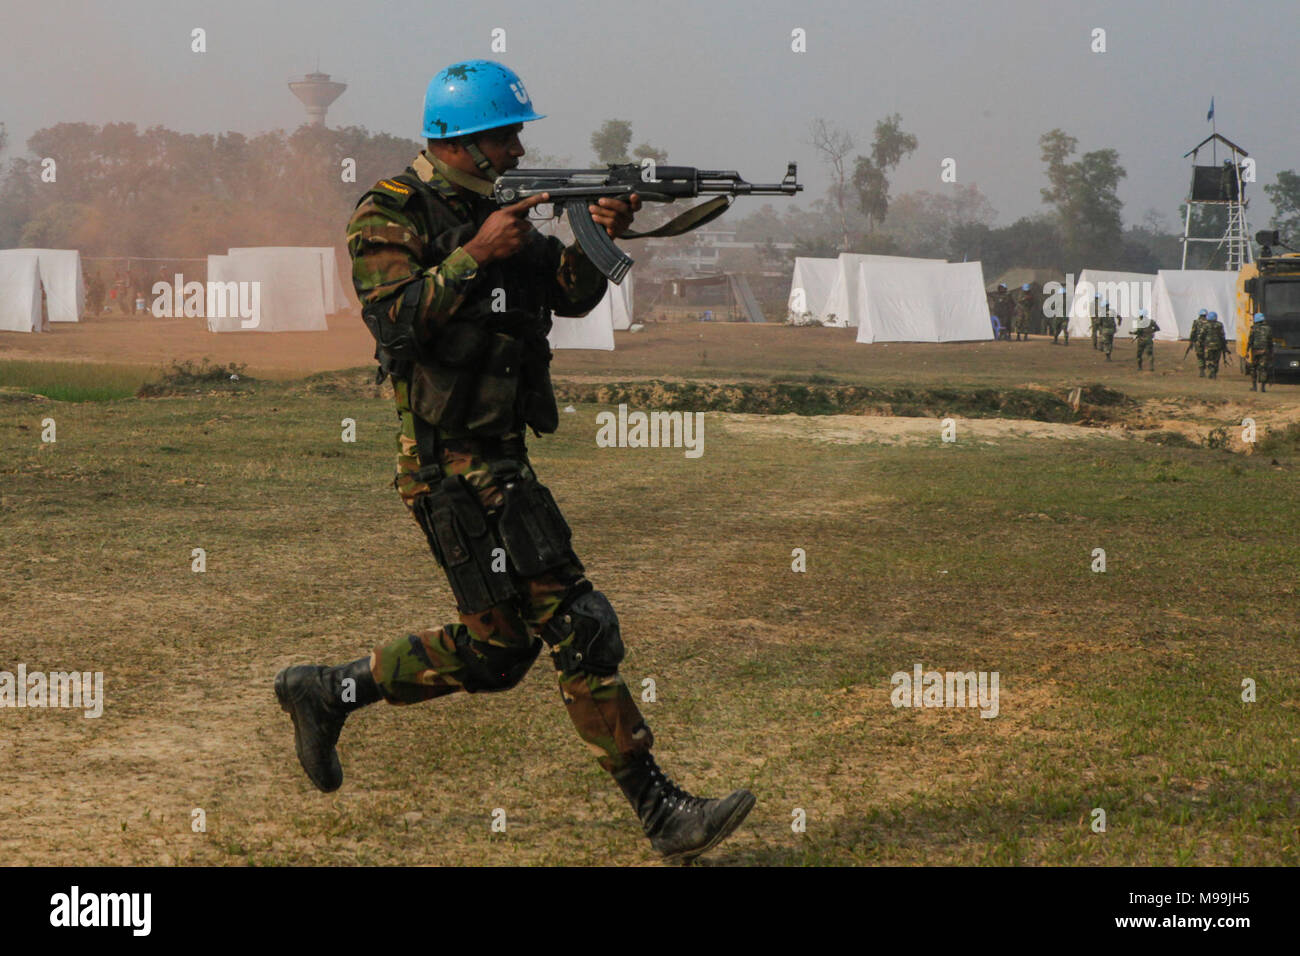 Ein bangladesch Armee Soldat des Para-kommandos Brigade führt einen Drop Zone während der Probe für eine Demonstration als Teil der Übung Shanti Doot 4 in Bangladesch zu sichern. Shanti Doot 4 ist eine multinationale Friedenstruppe der Vereinten Nationen Übung mit mehr als 1.000 Teilnehmer aus mehr als 30 Ländern konzipiert vor der Bereitstellung Schulungen für UN-Partnerländern in der Vorbereitung für real-world friedenserhaltenden Operationen. (U.S. Marine Corps Stockfoto